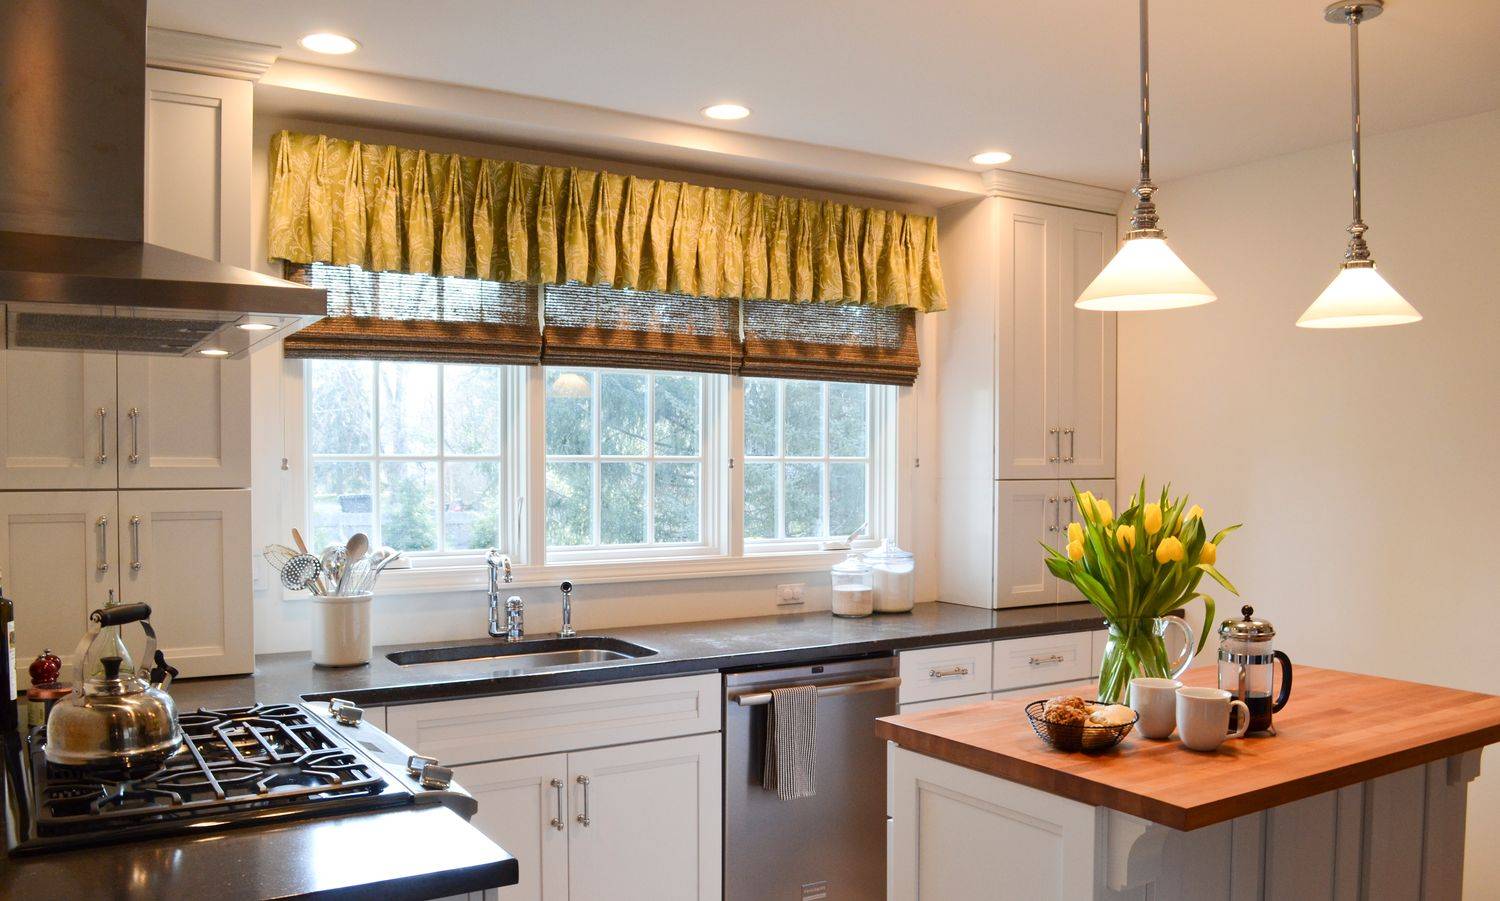 Римские шторы на кухню фото: своими руками, дизайн 2021 в интерьере, современные шторы на окно, как сшить видео-инструкция